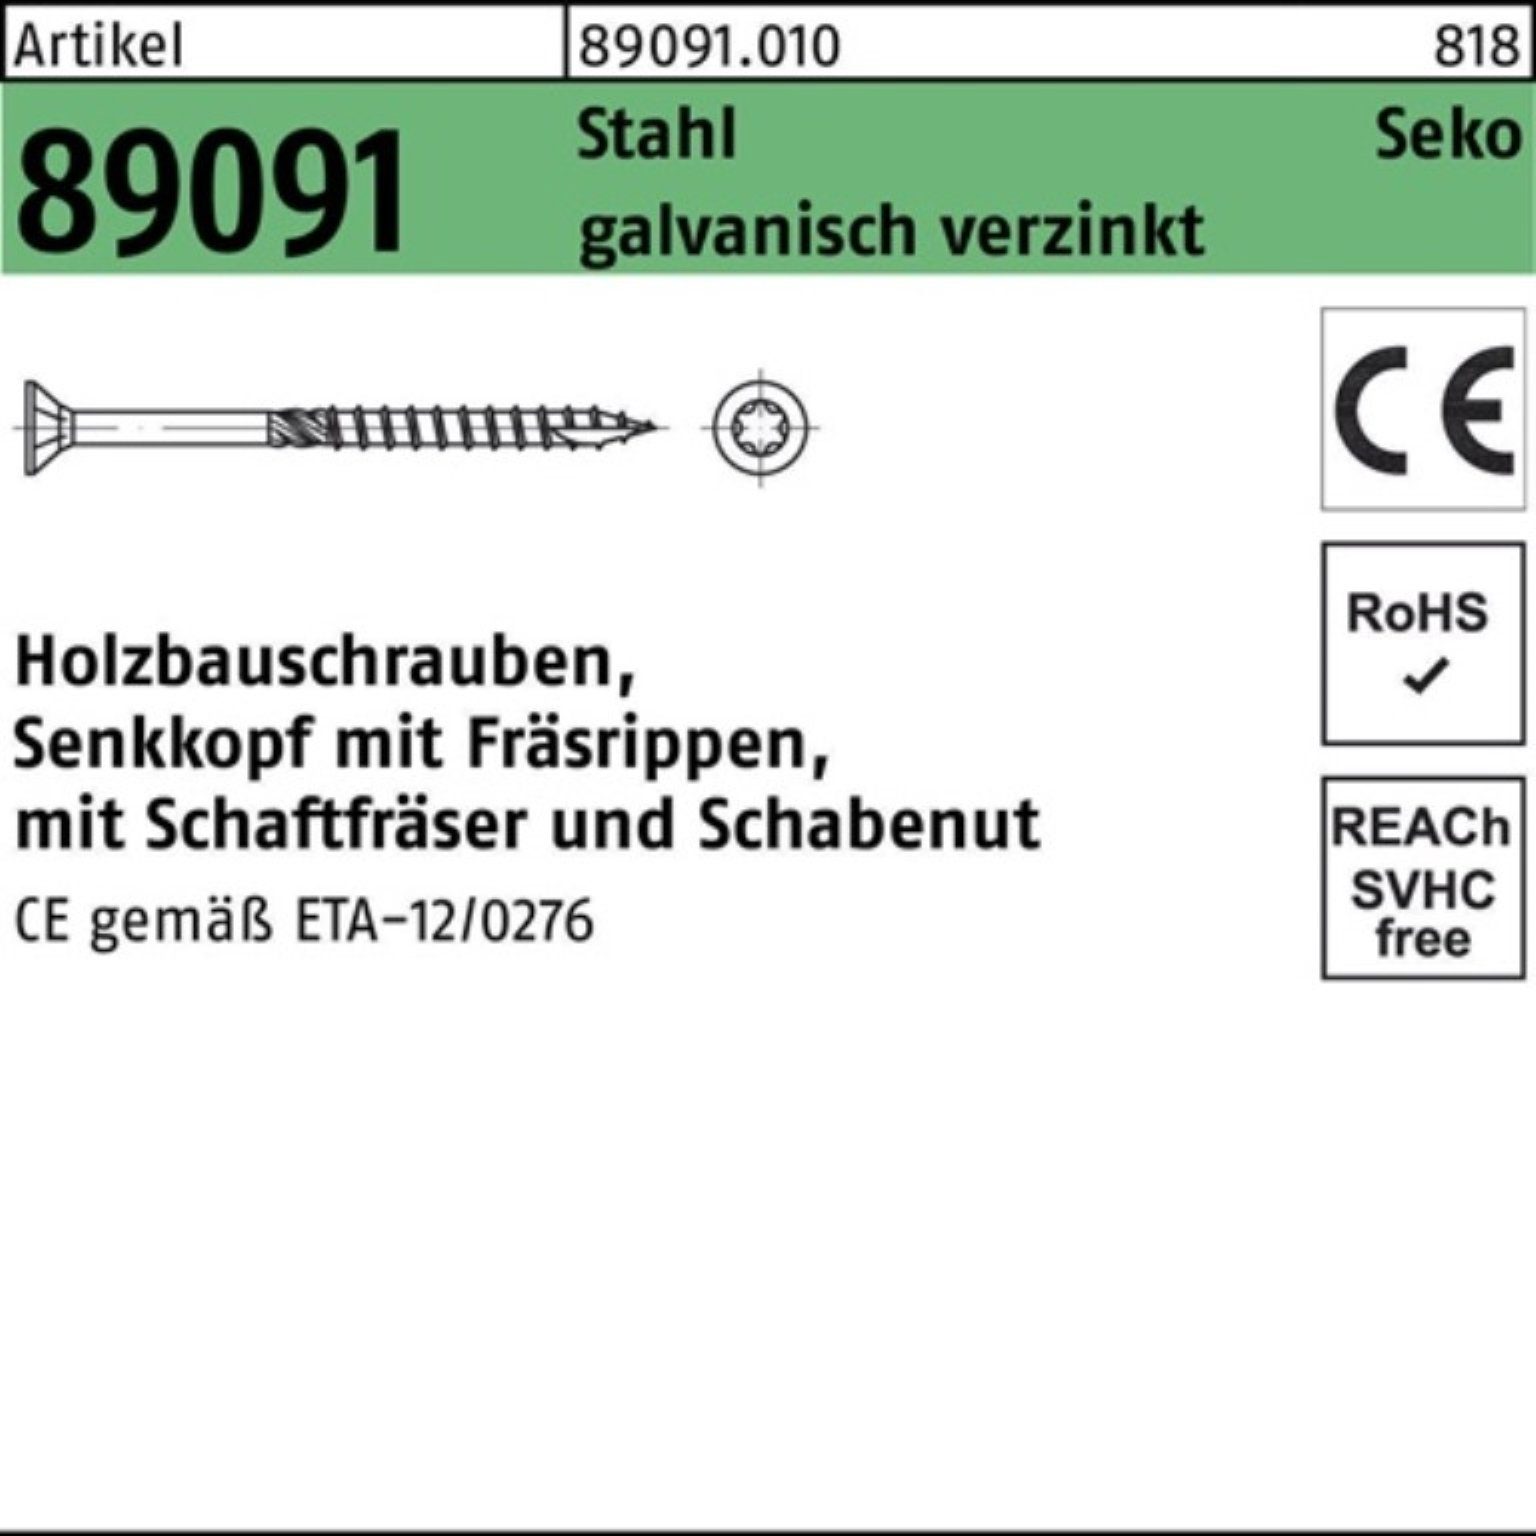 SEKO 10x140-T40 Holzbauschraube Pack 100er galv.verz 89091 R Stahl ISR Holzbauschraube Reyher